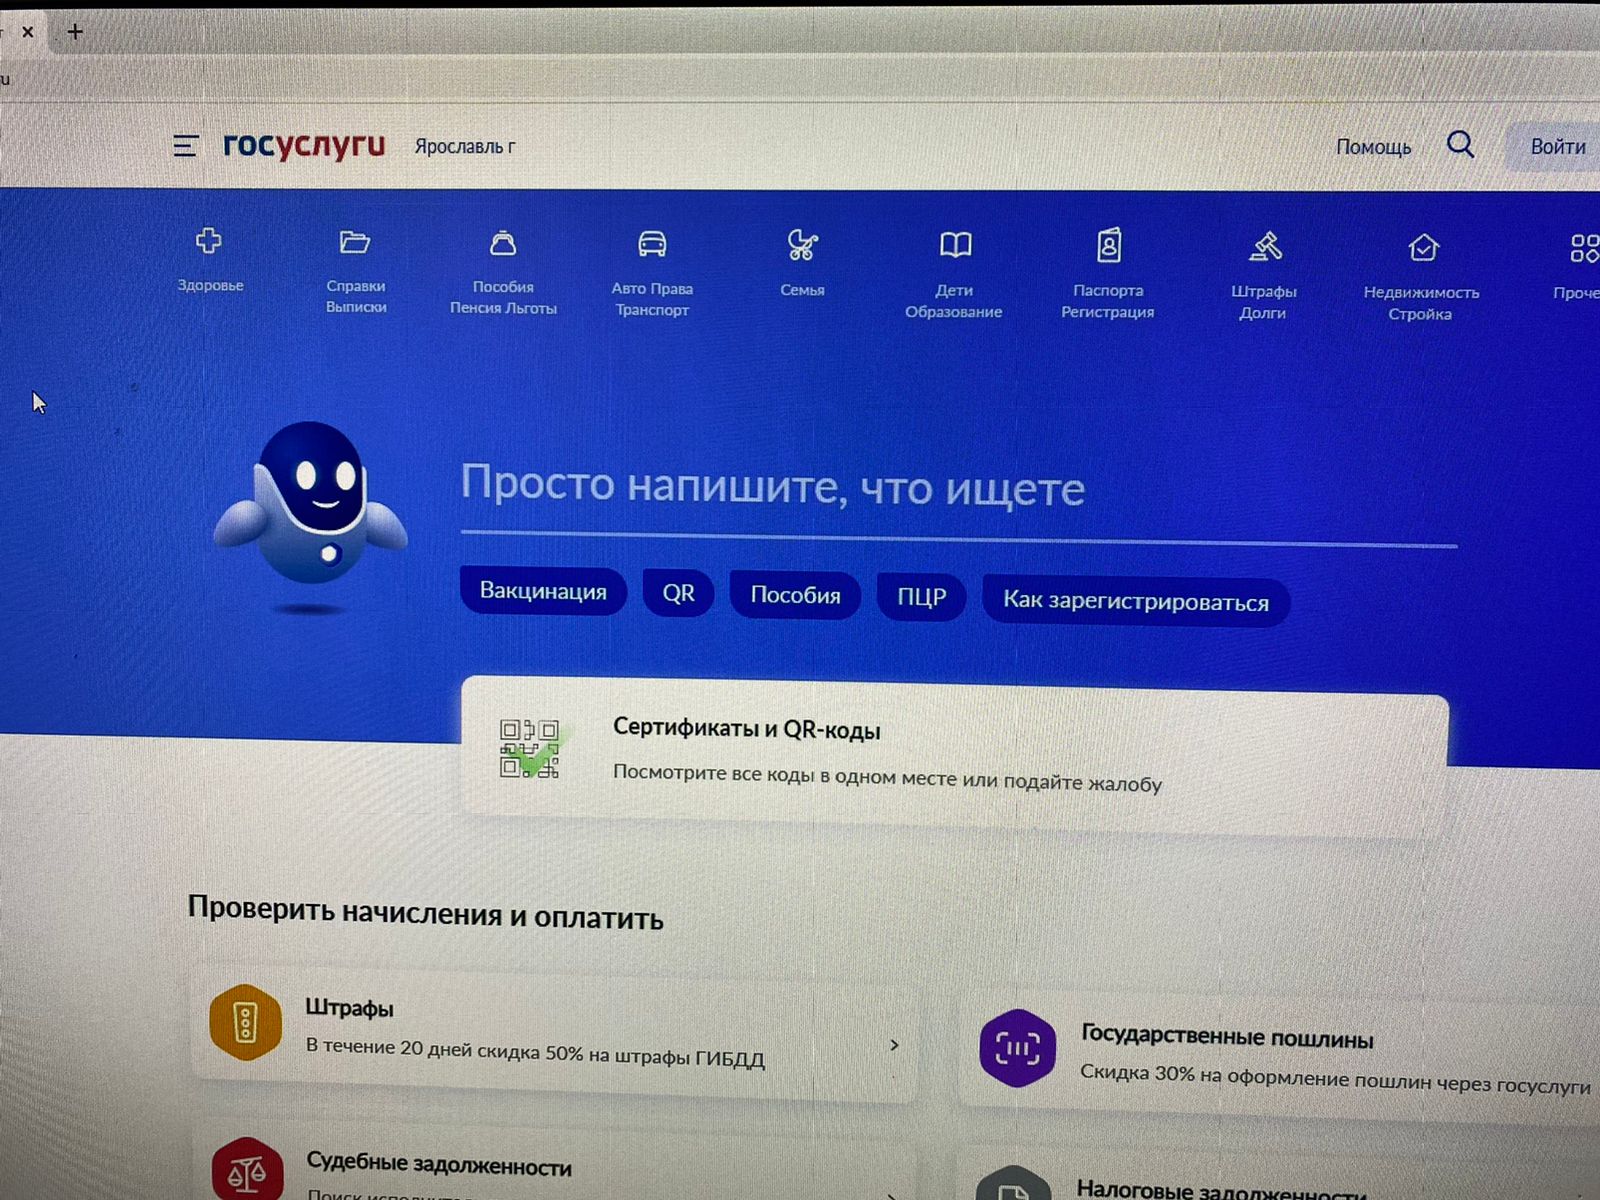 Ярославцы смогут пользоваться сайтом «Госуслуги» даже при нулевом балансе